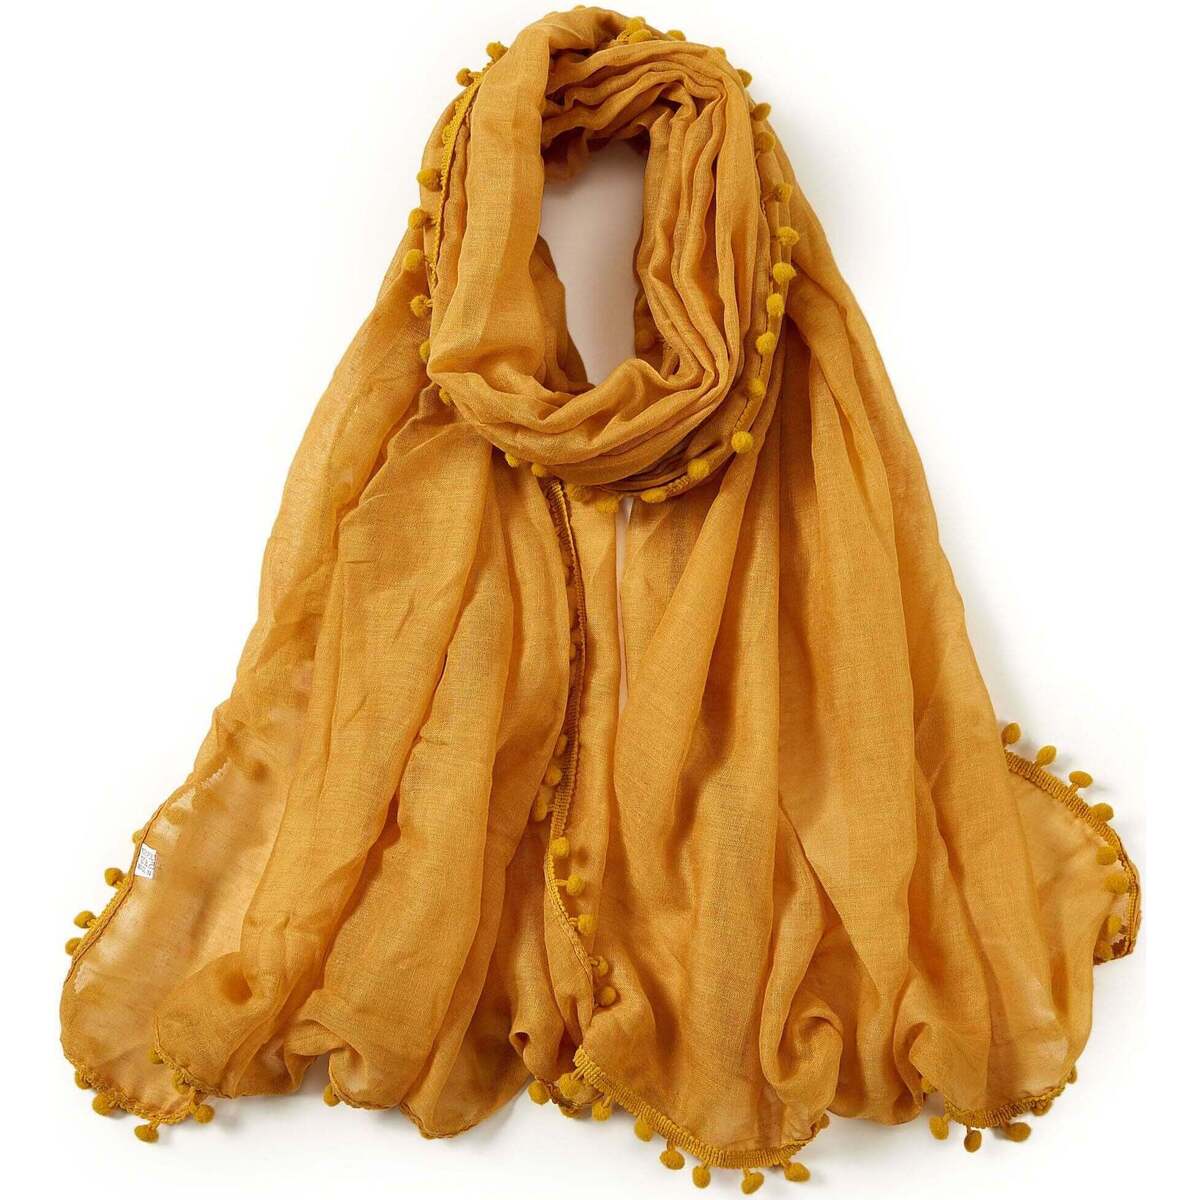 Accessoires textile Femme Calvin Klein Jea Chèche coton jaune or Elvia Corail Orange